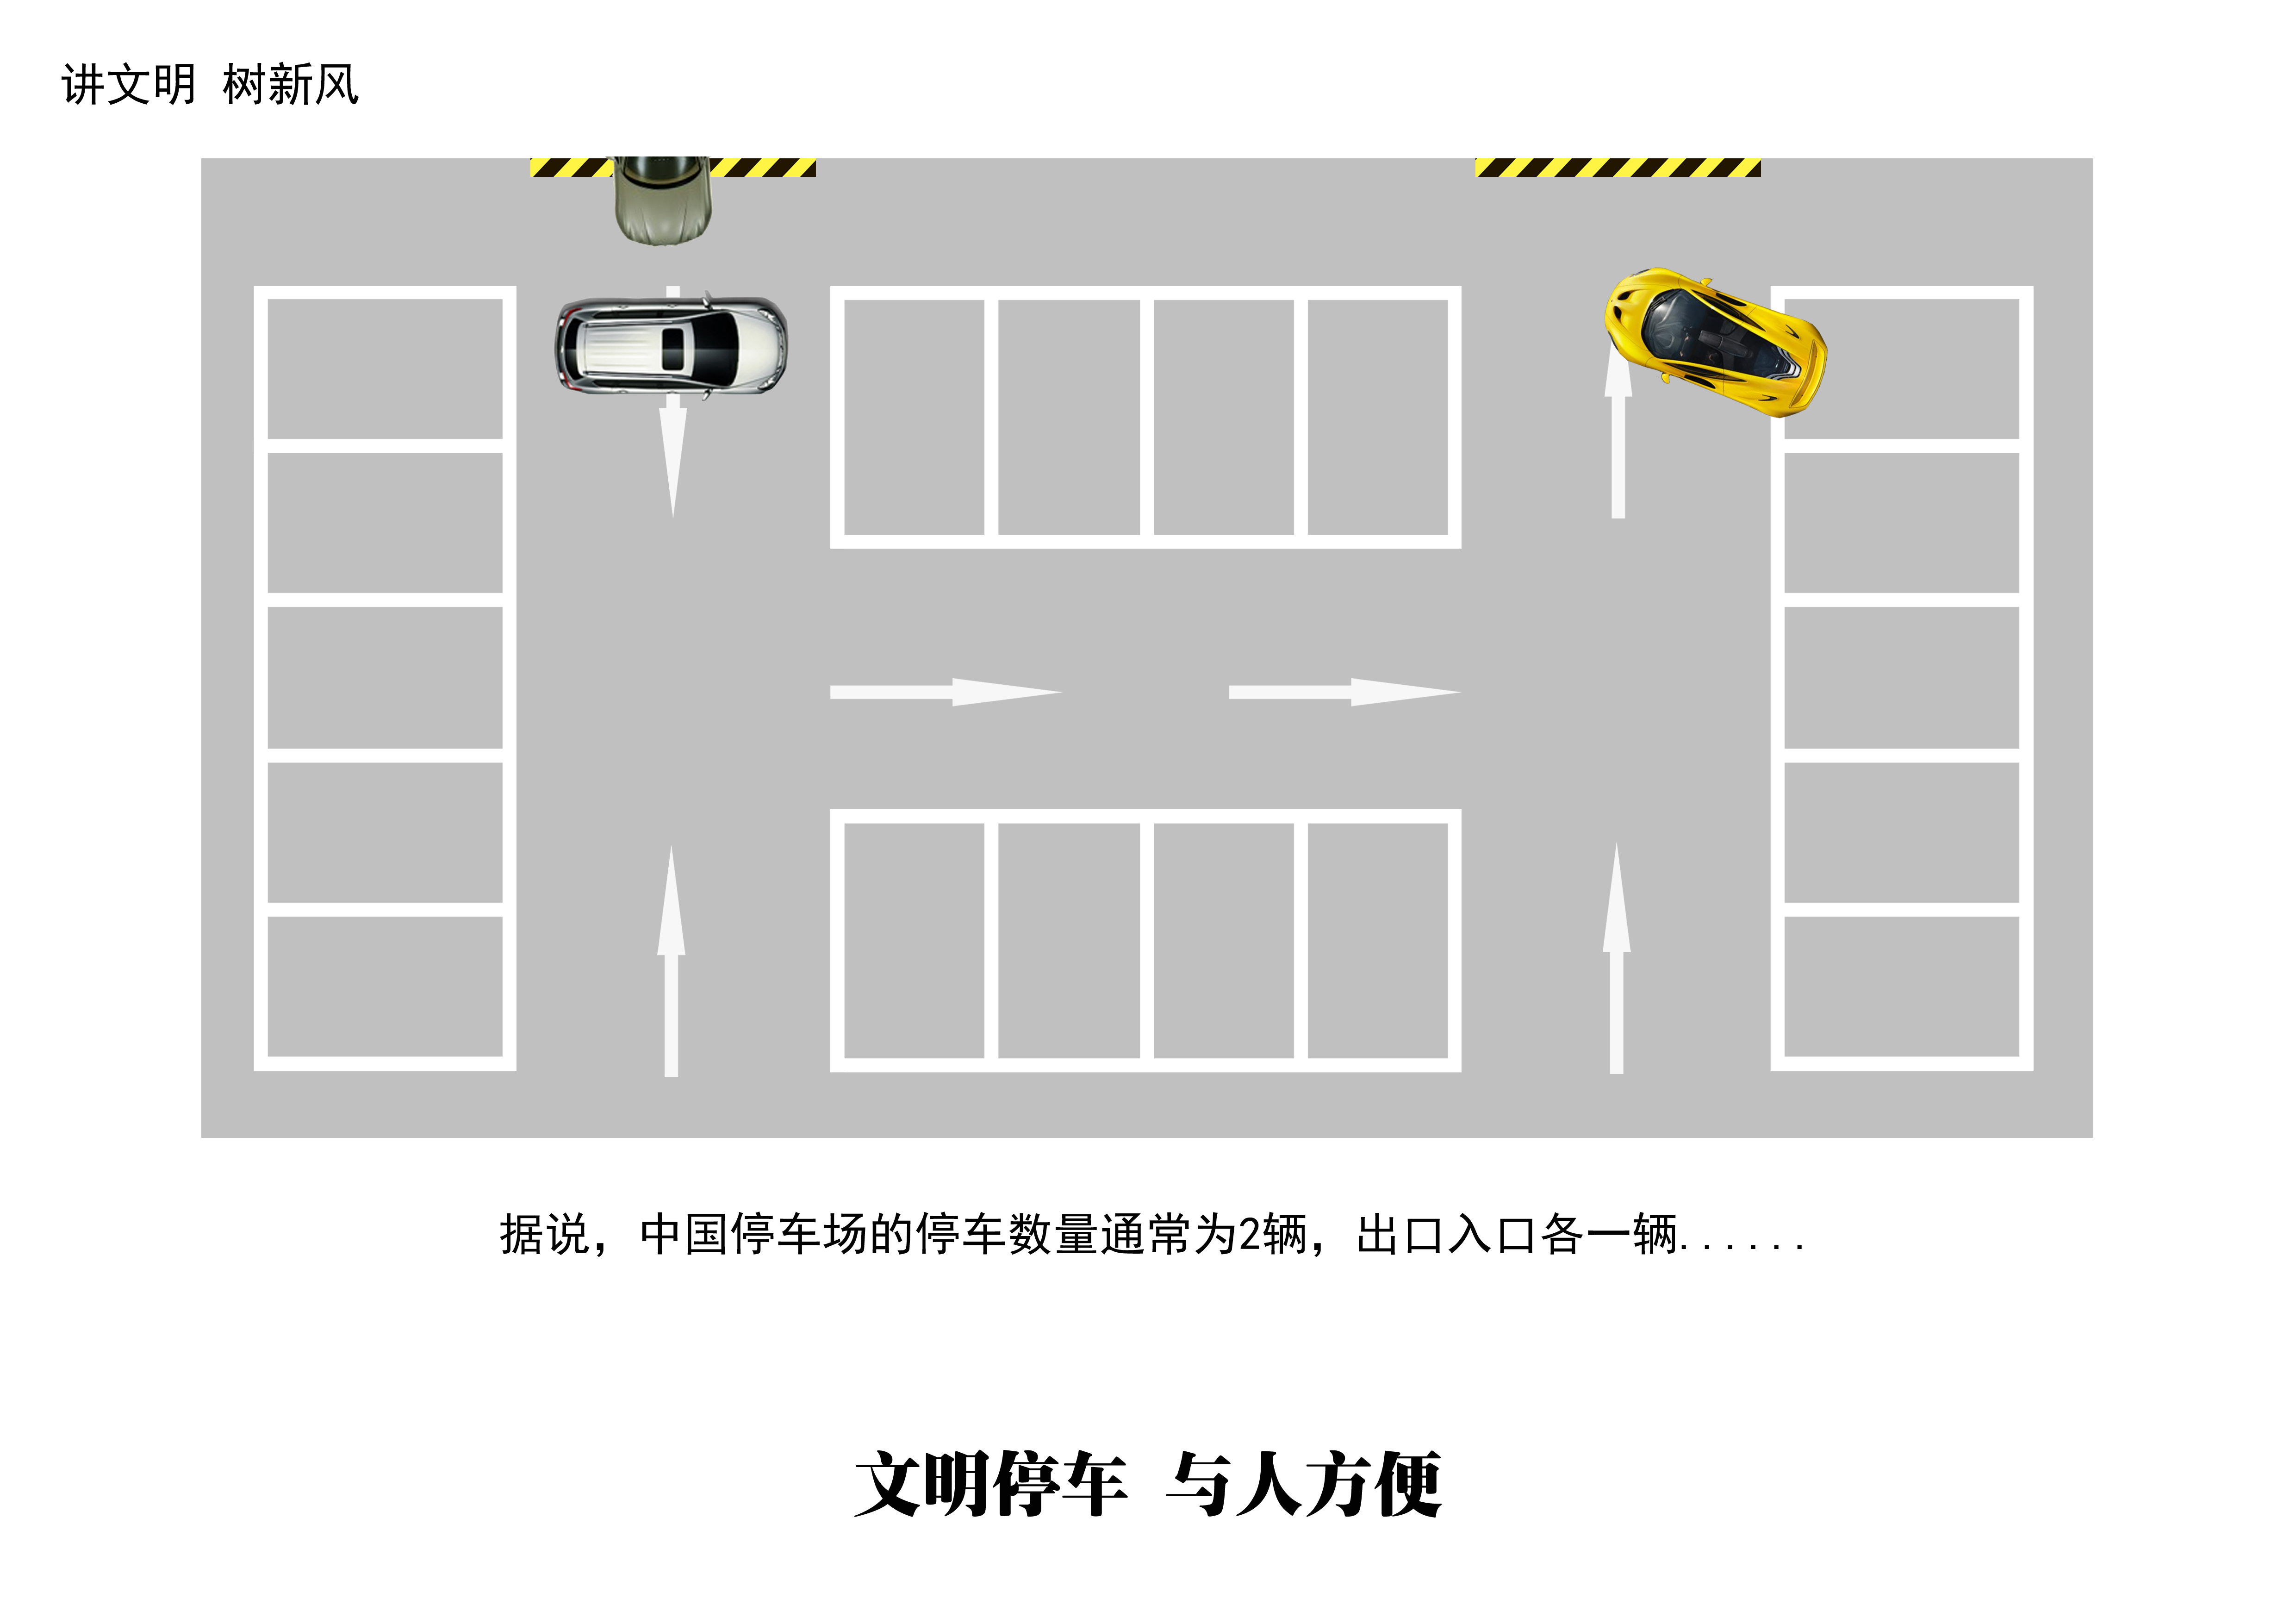 中国式停车+GRB.jpg